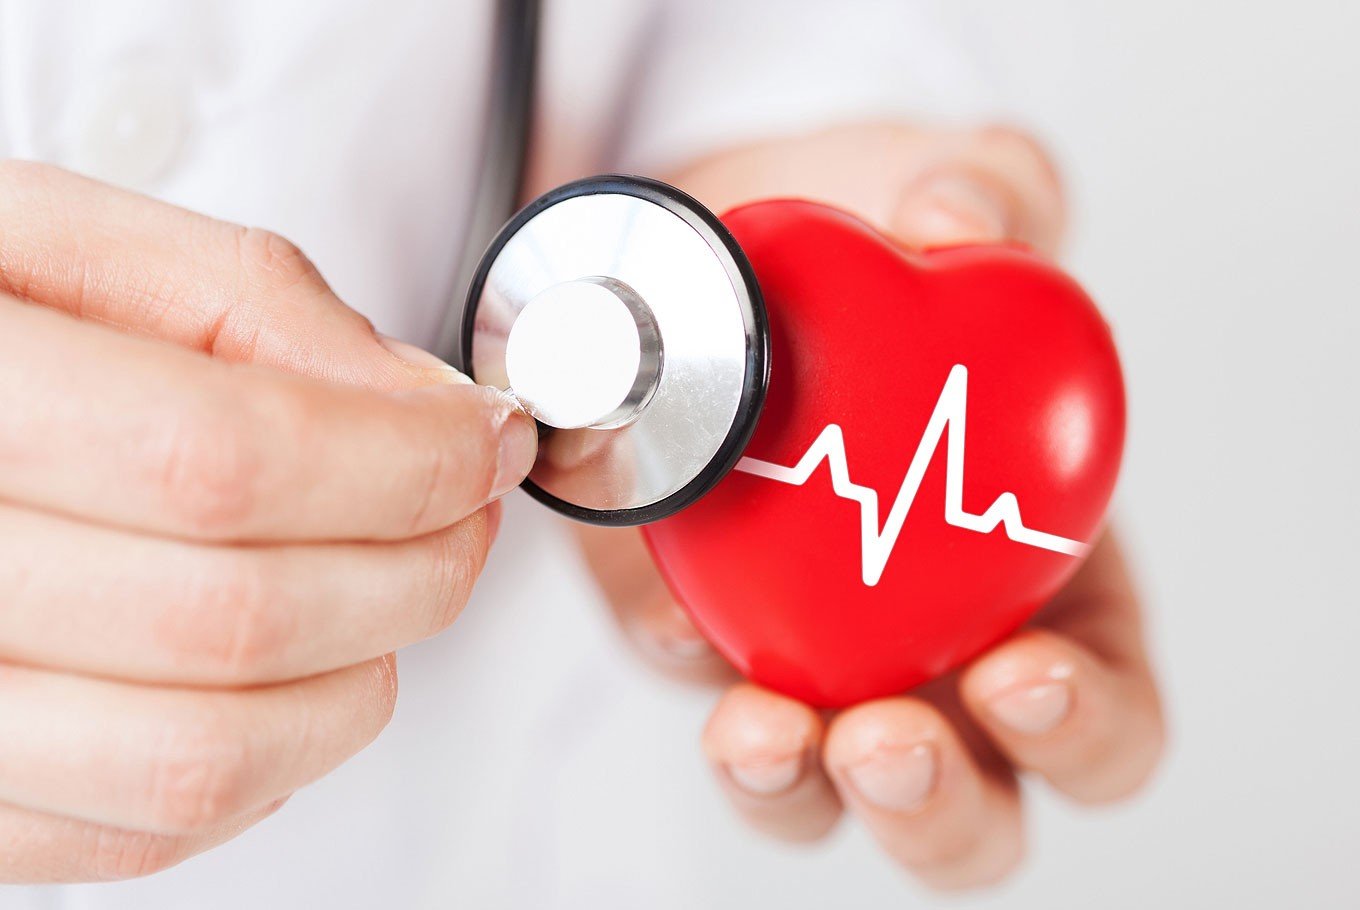 mesterséges szív egészségügyi kockázatai